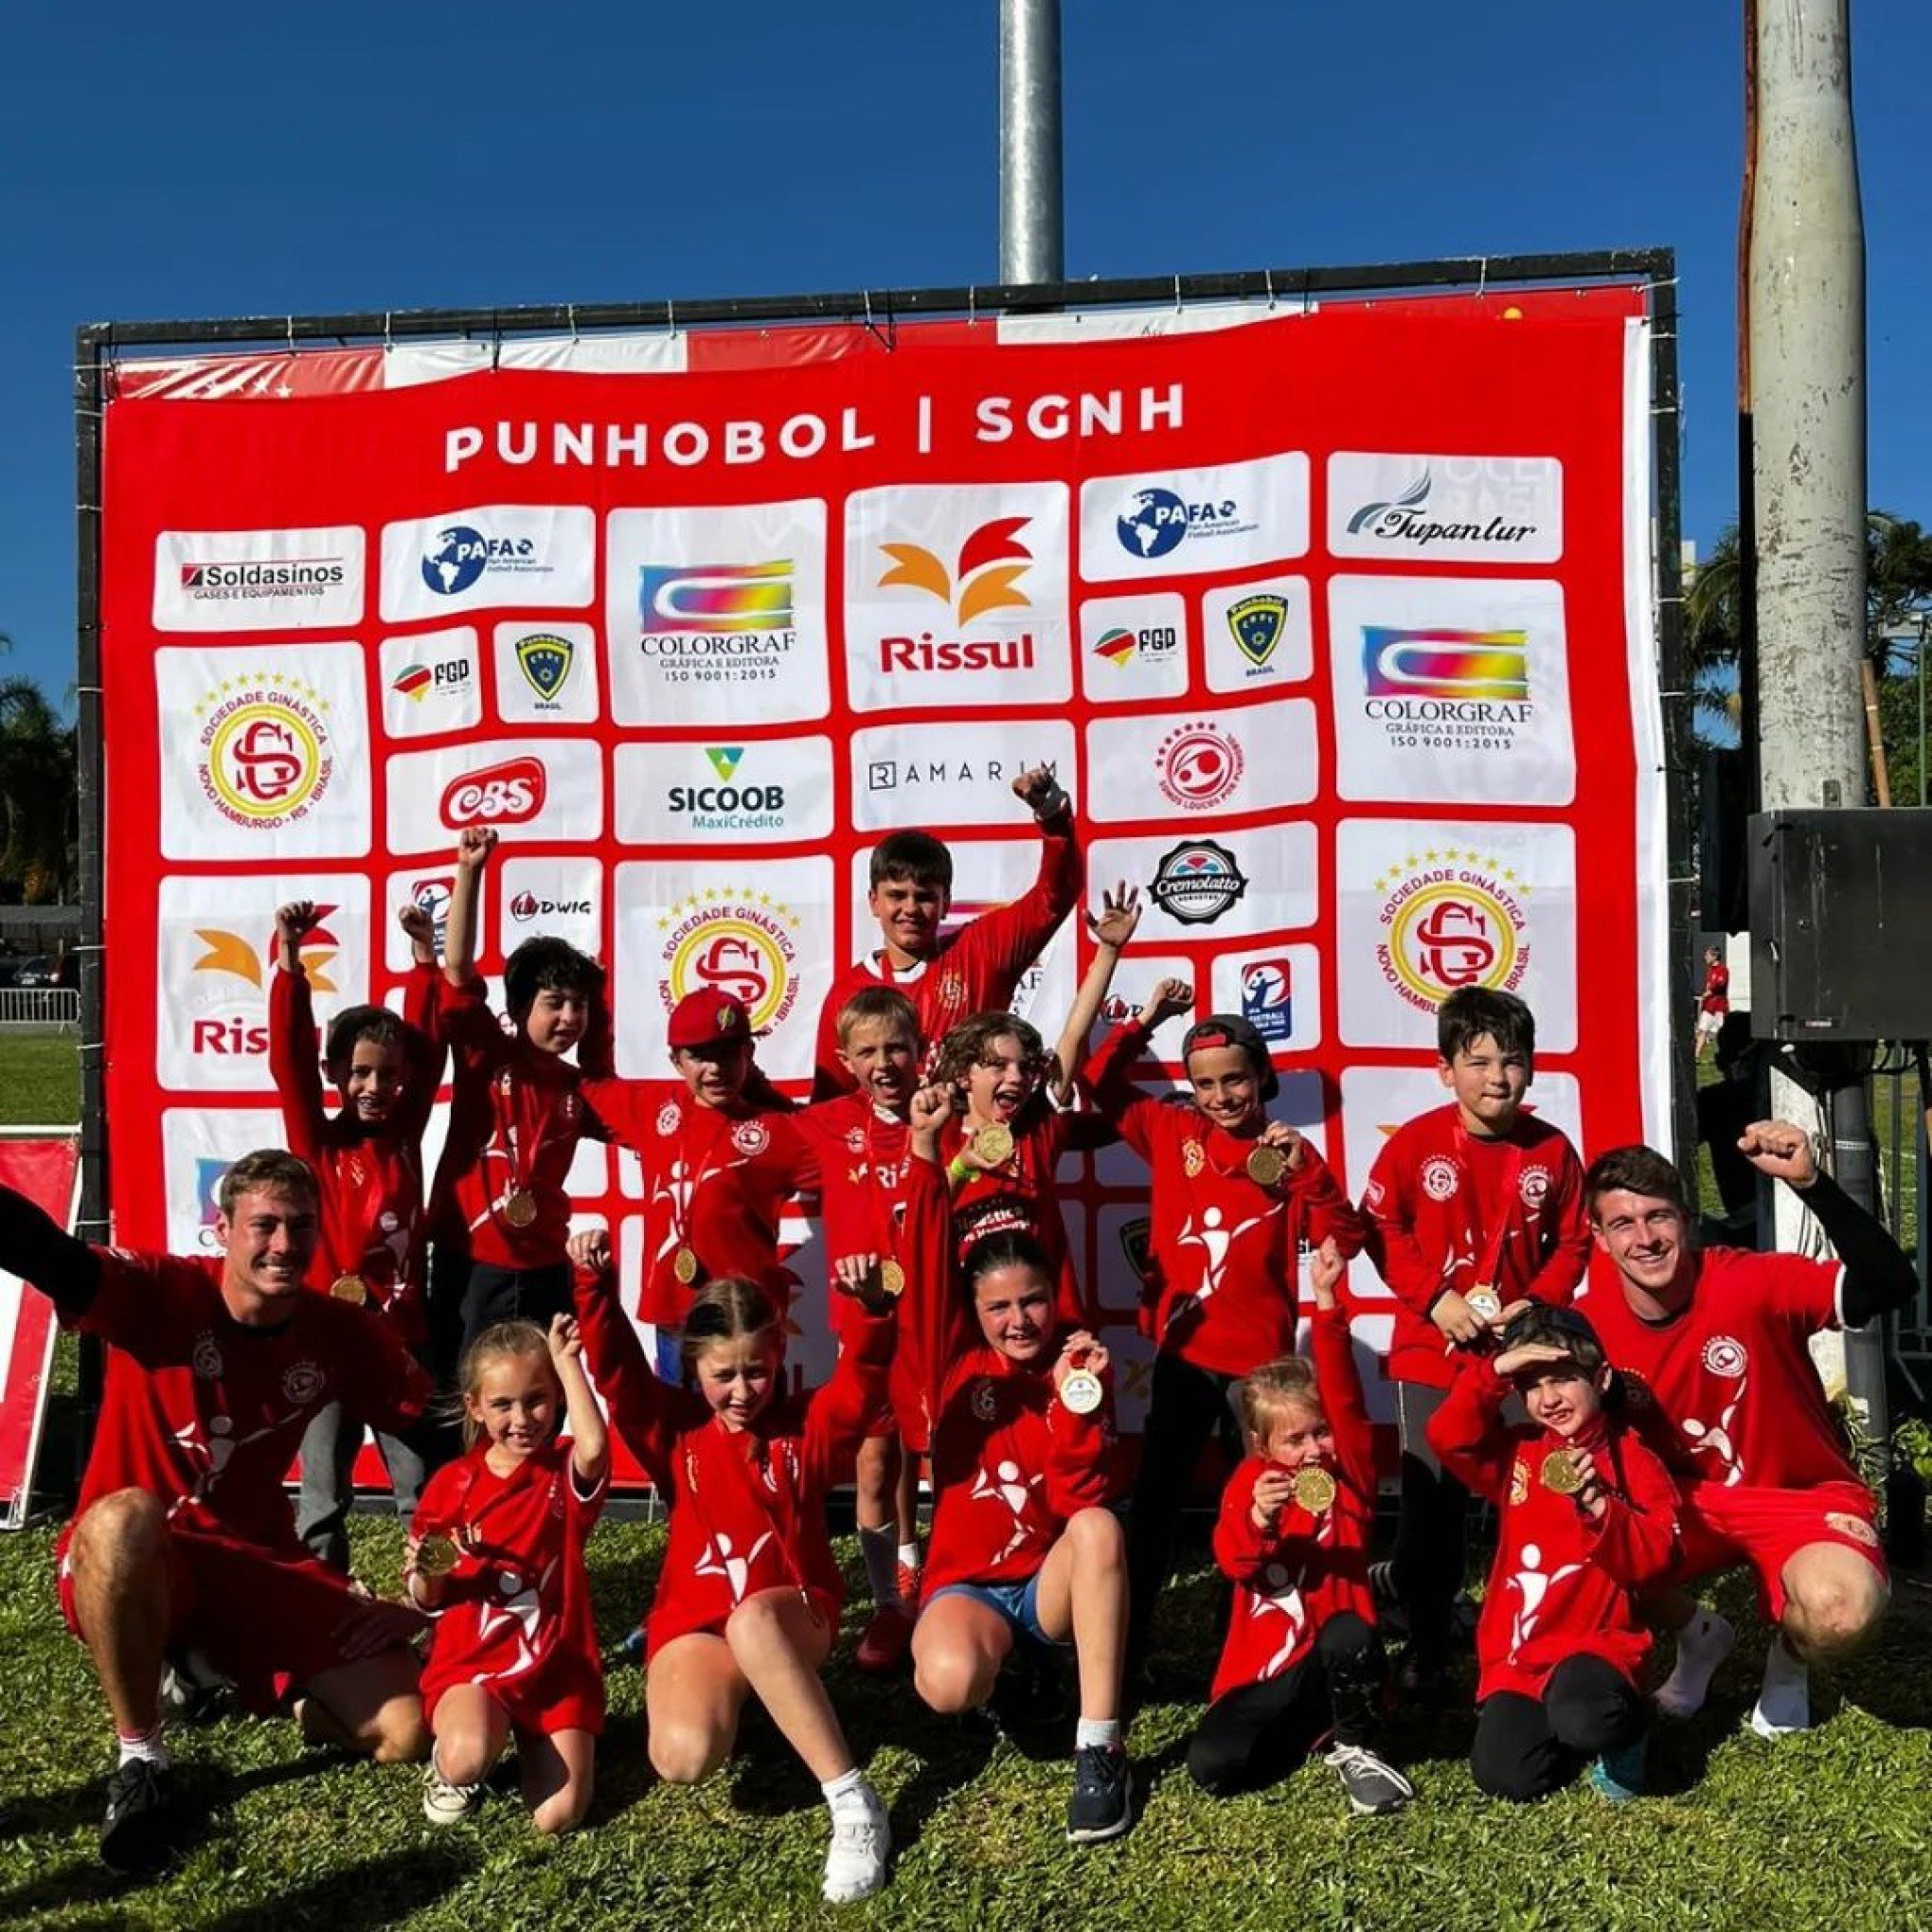 Copa Porto Alegre de Punhobol, que é o torneio mais importante da